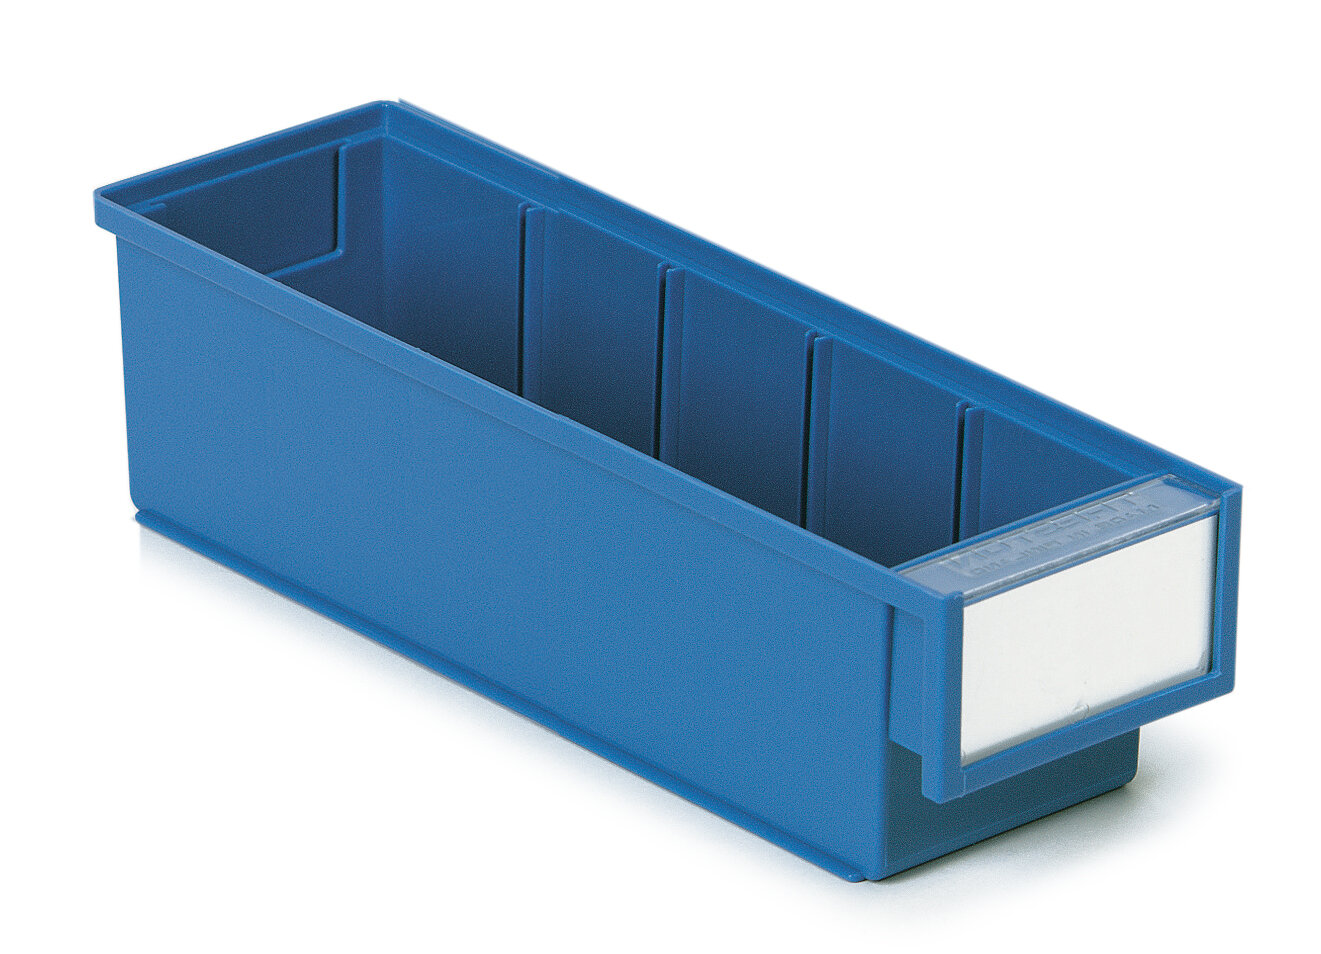 Shelf bin 92x300x82 Blue